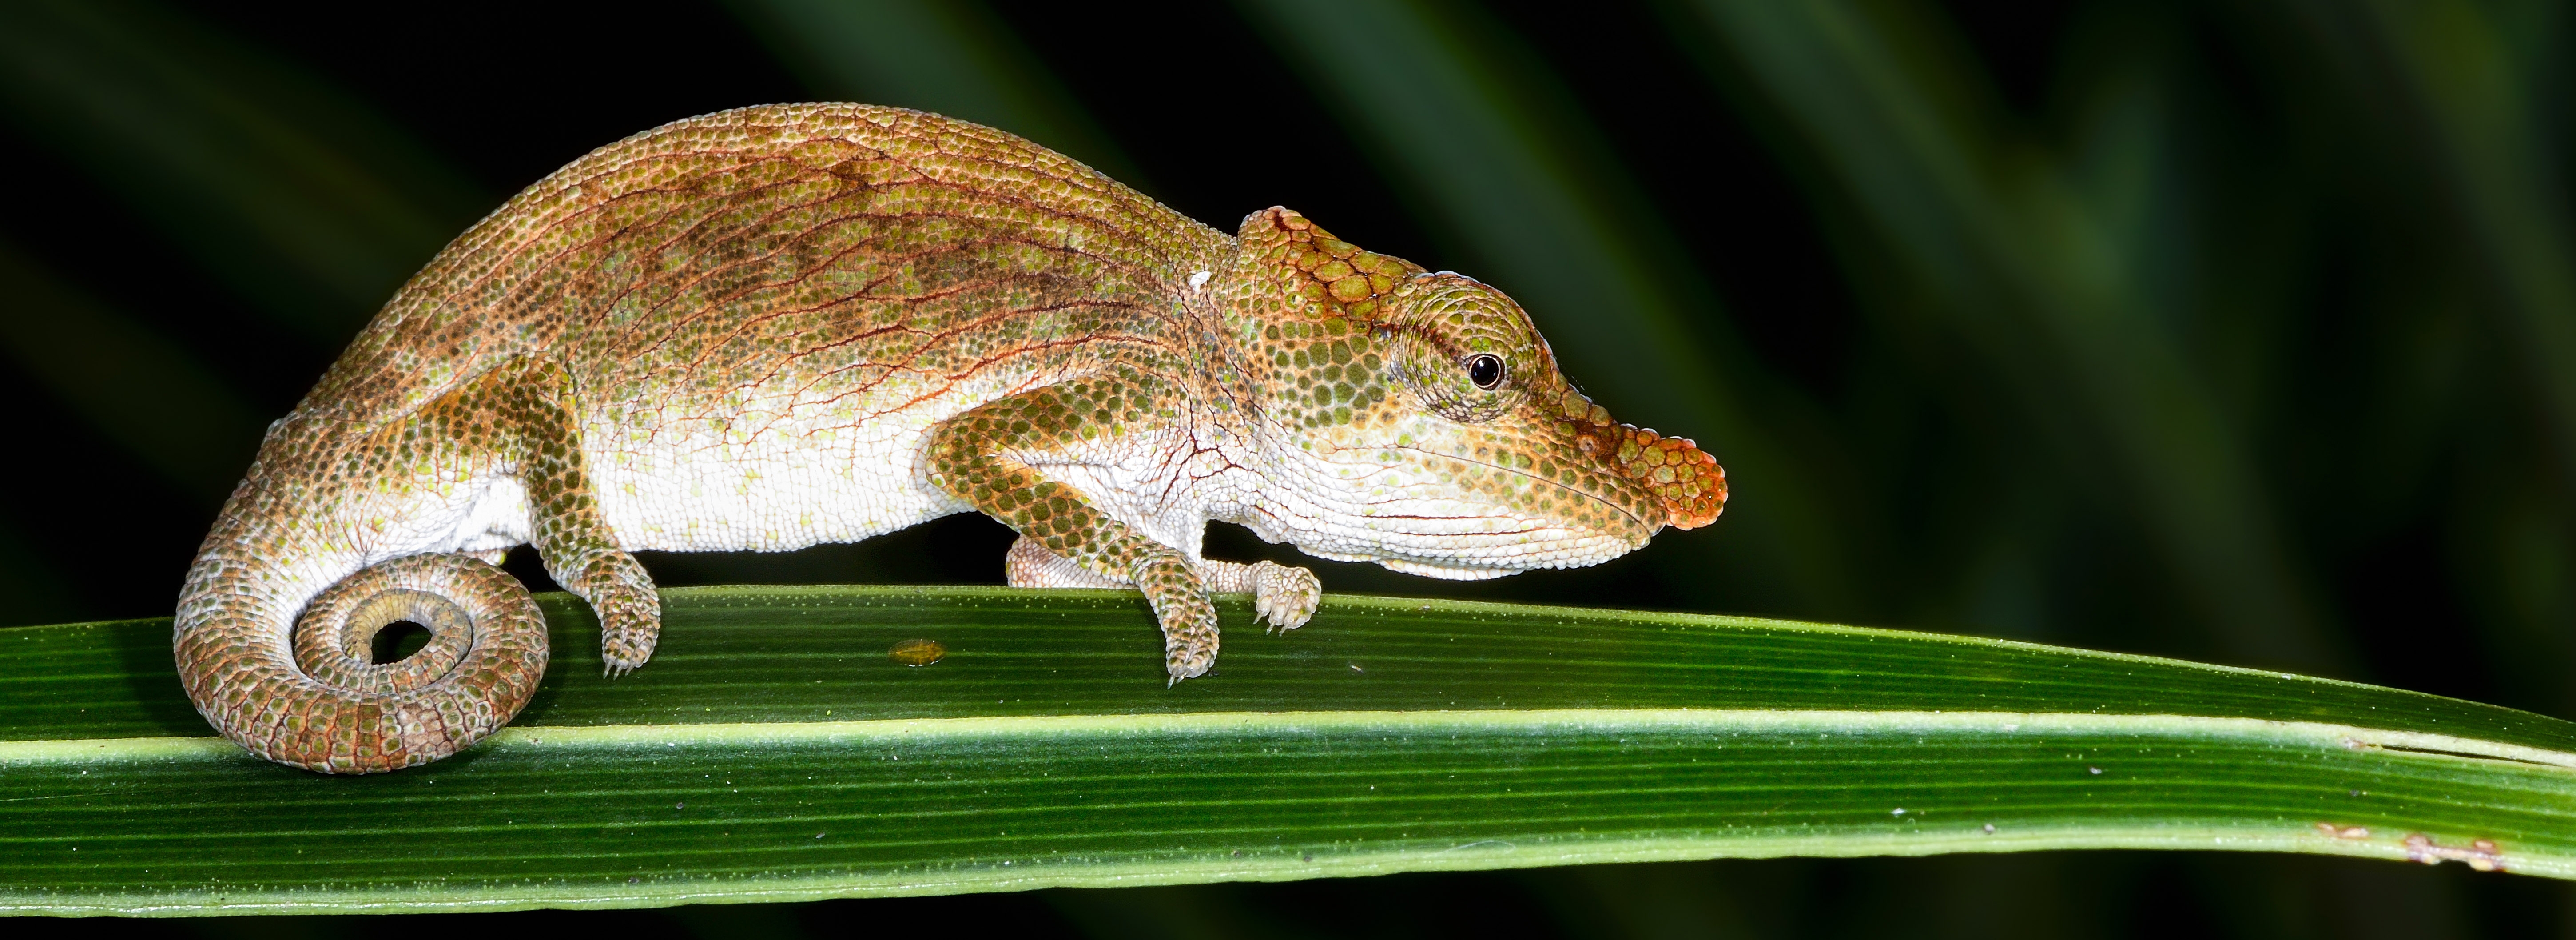 Big-nosed chameleon